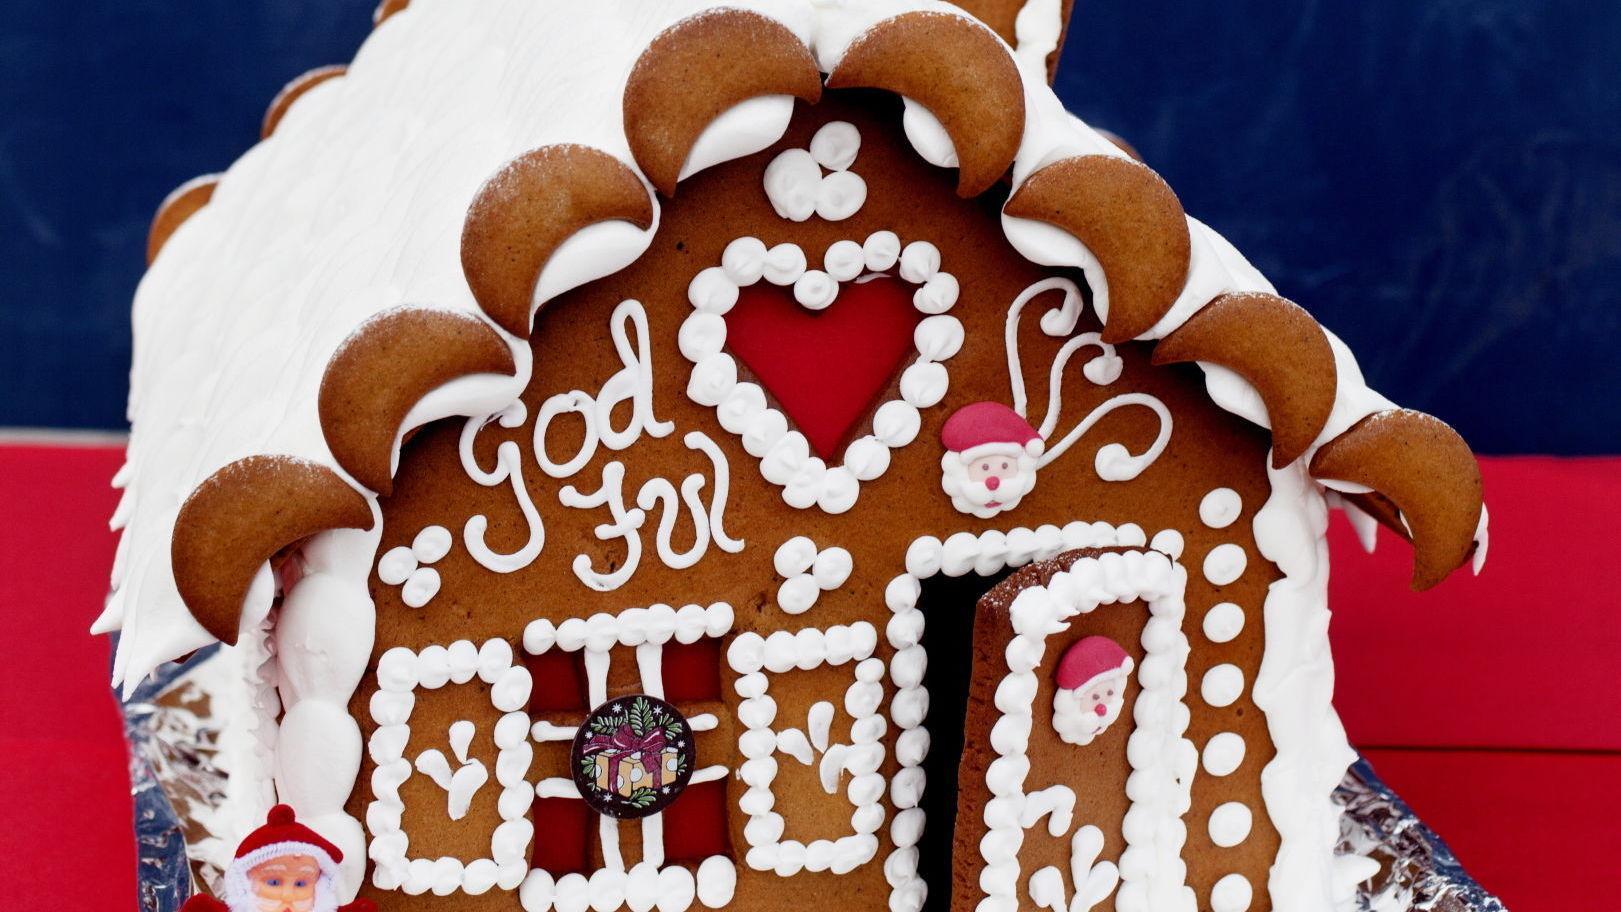 KREATIV AKTIVITET: Pepperkakehus hører julen til, og det er kun fantasien som setter grenser for bygging og pynting. Foto: Janne Møller-Hansen / VG